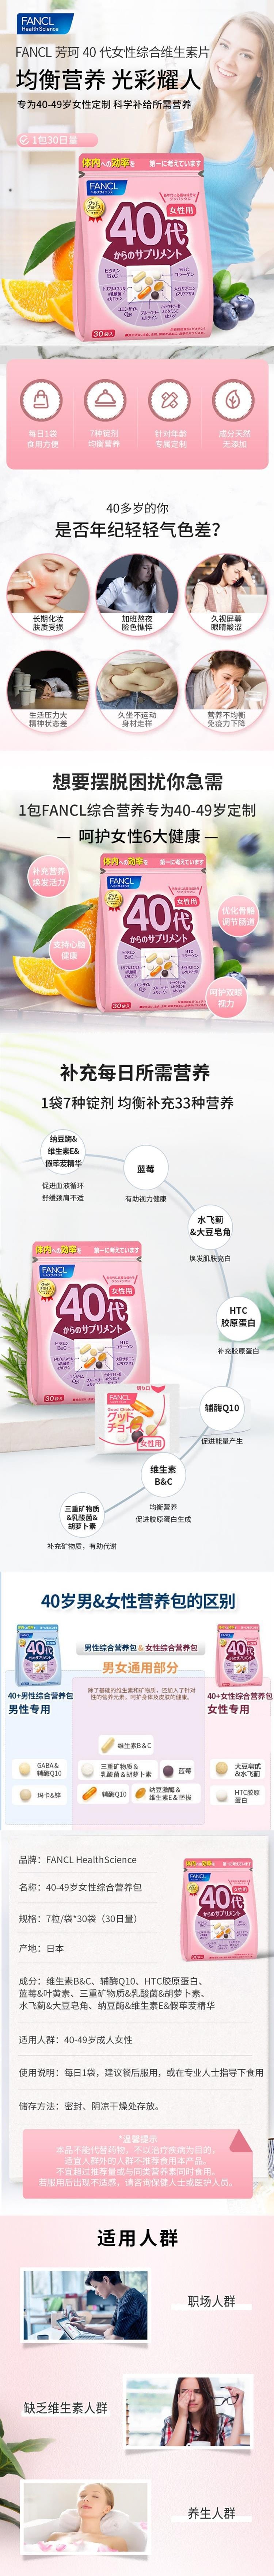 【日本直邮】FANCL芳珂 40+/40代/40岁女性八合一综合维生素片30袋入